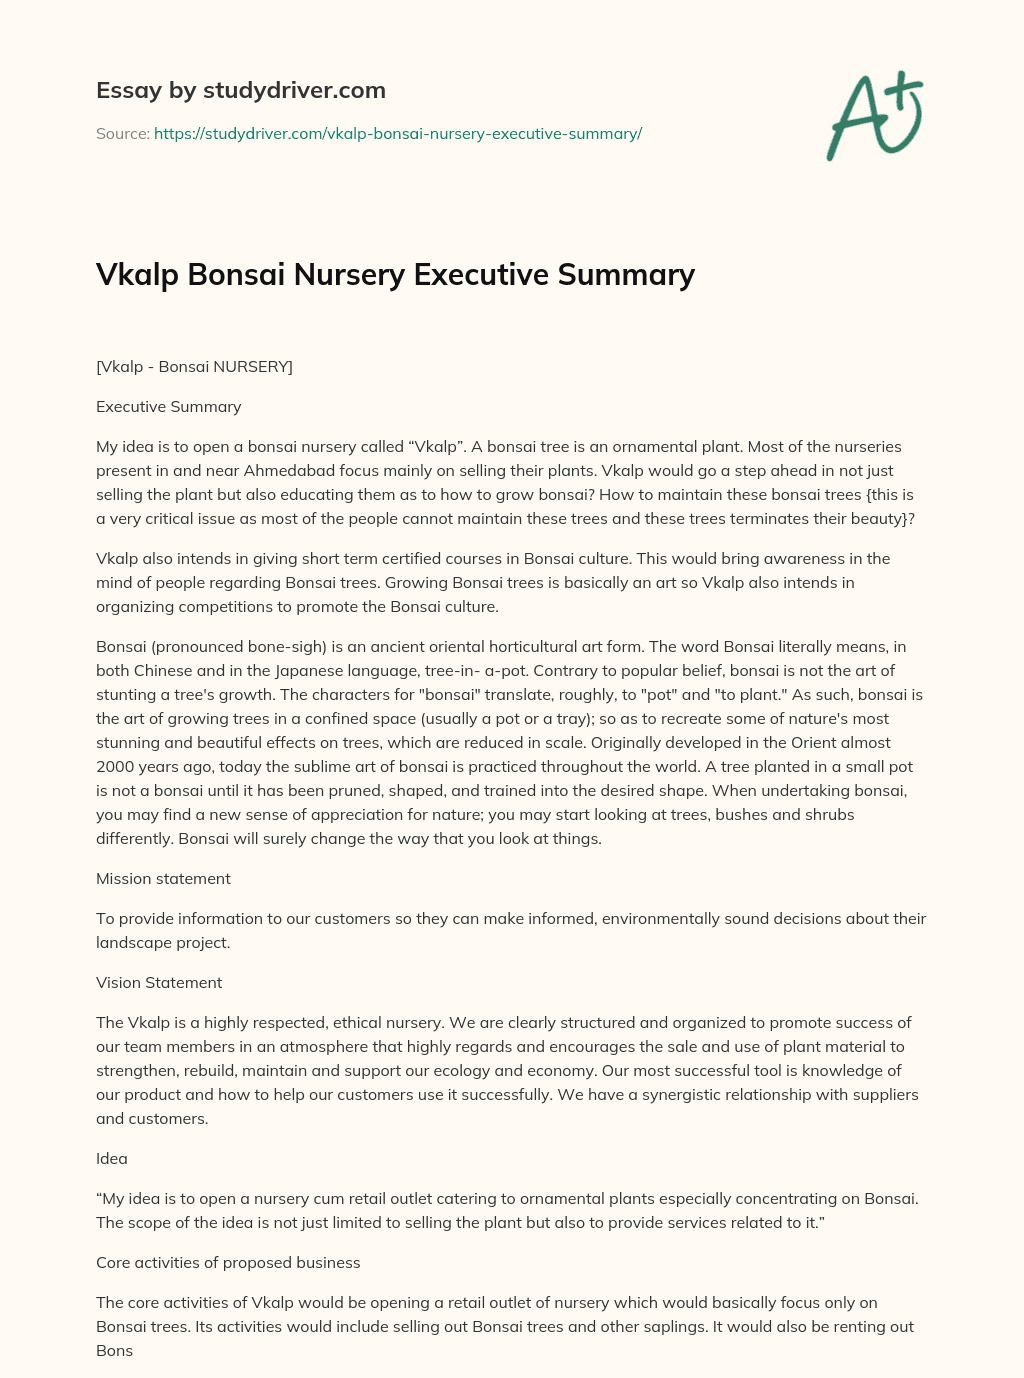 Vkalp Bonsai Nursery Executive Summary essay